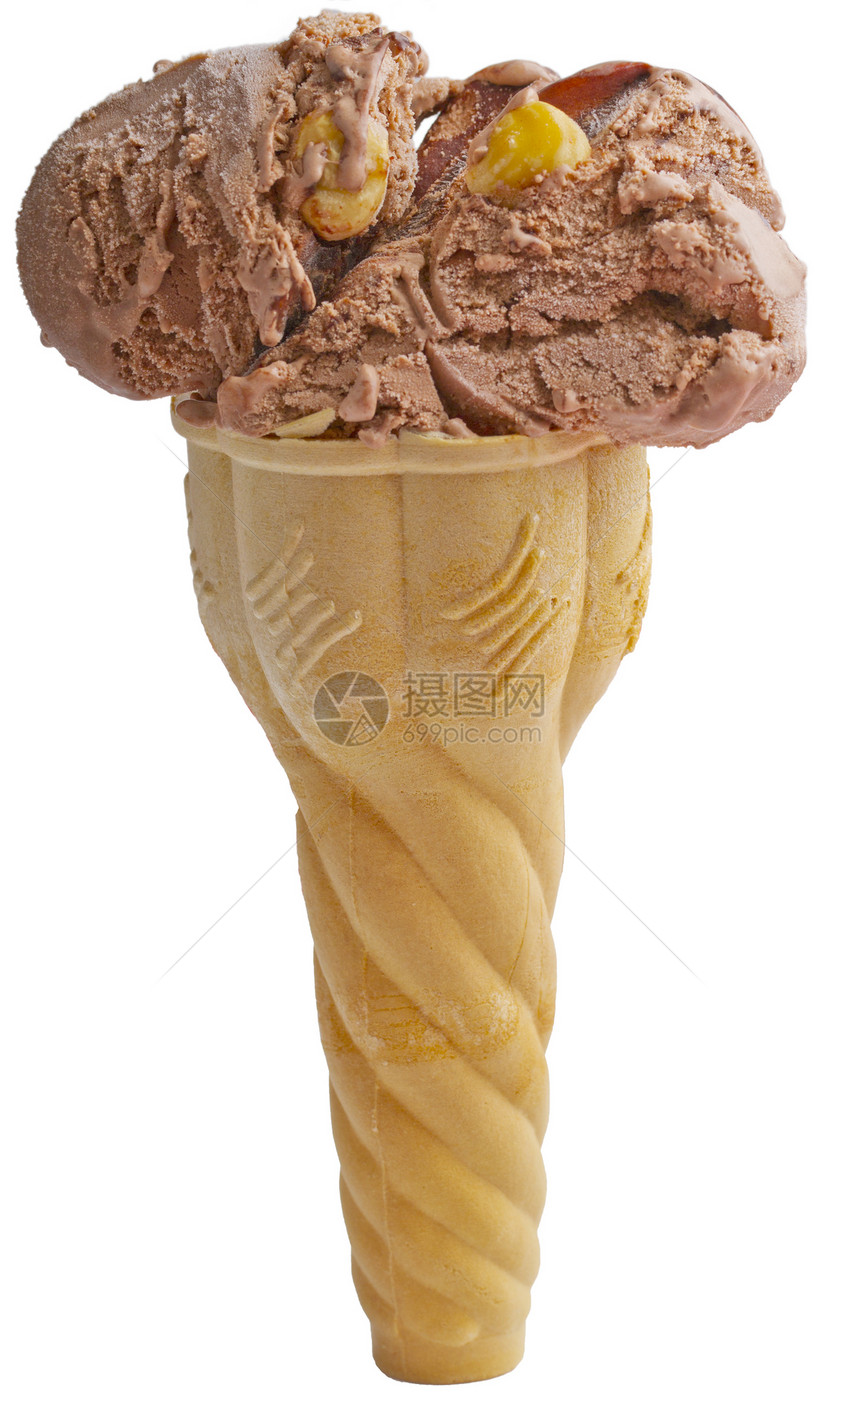 冰霜浆果食物圣代冰淇淋锥体香草奶油牛奶小吃奶制品图片